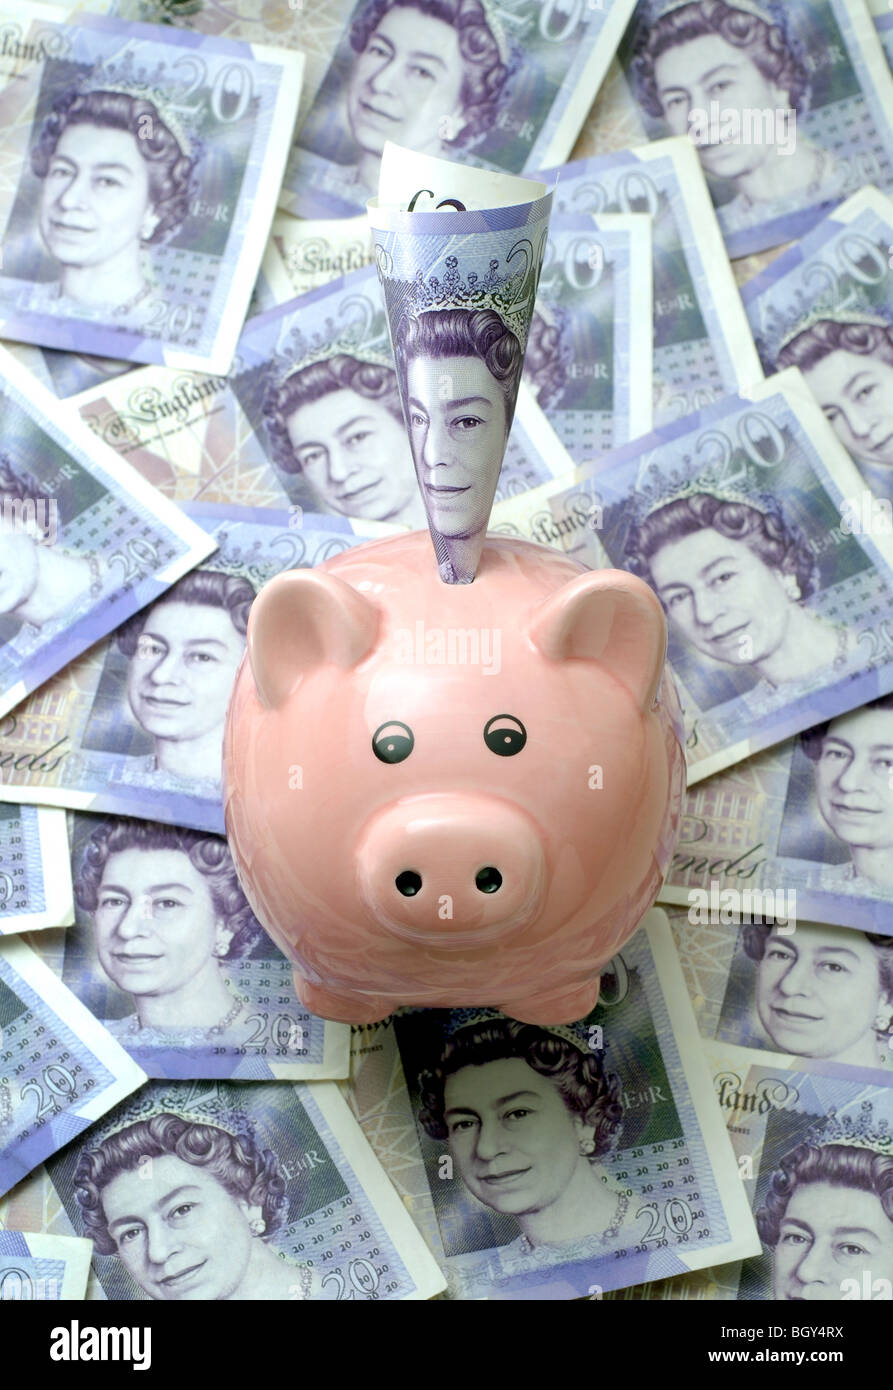 PIGGYBANK circondato da venti British pound note re l'economia dei redditi del risparmio il budget familiare la recessione soldi contanti UK Foto Stock